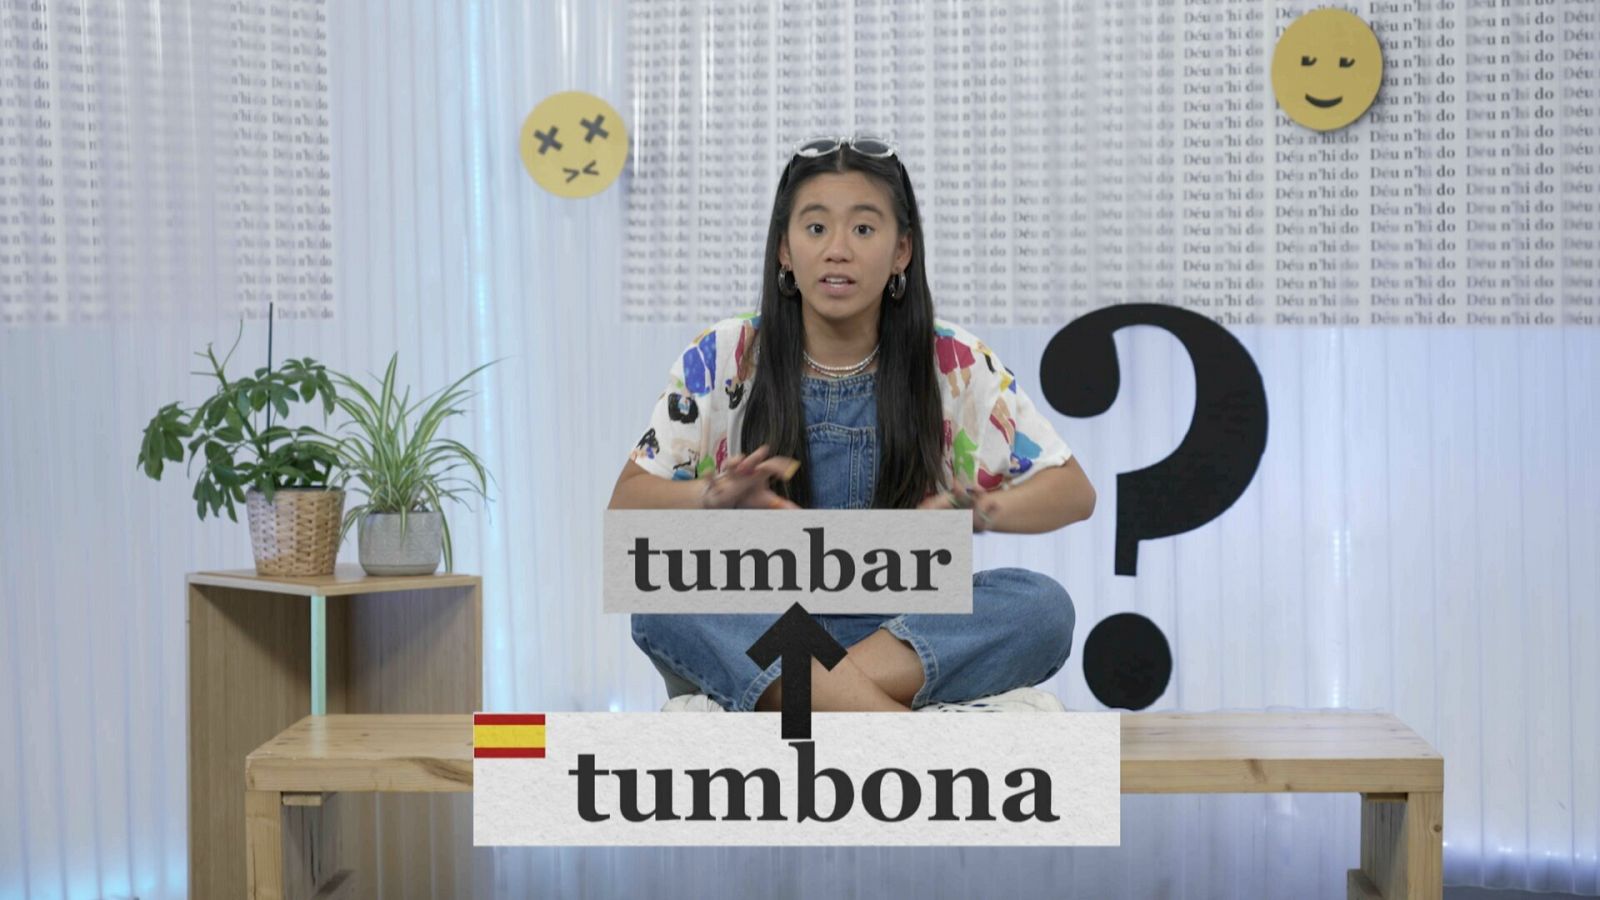 Com es diu "tumbona" en català?